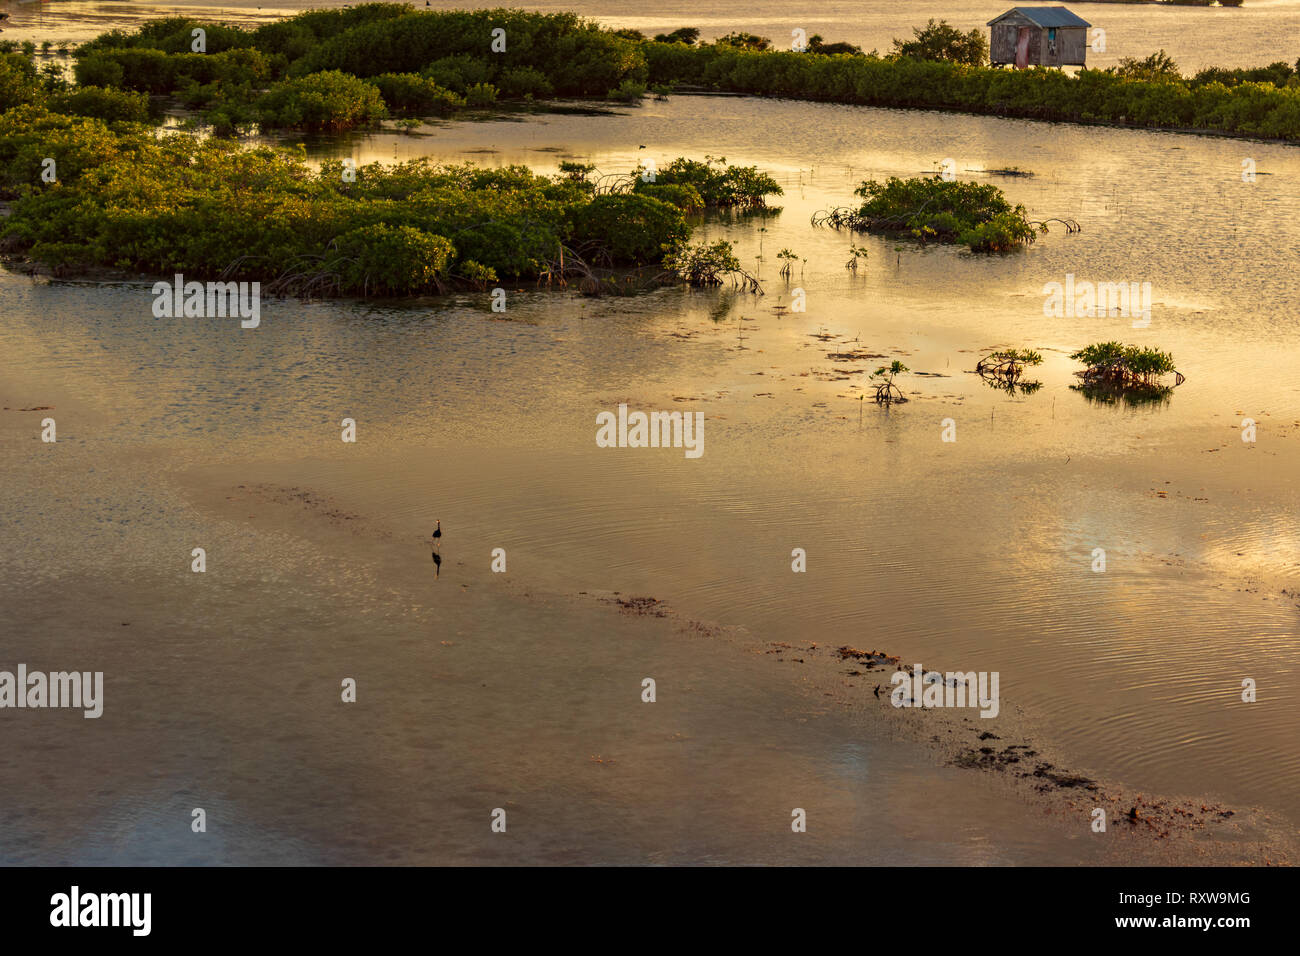 San Pedro, Ambergris Caye, Belize au coucher du soleil avec les mangroves dans l'avant-plan qui reflètent les nuages au-dessus. Banque D'Images